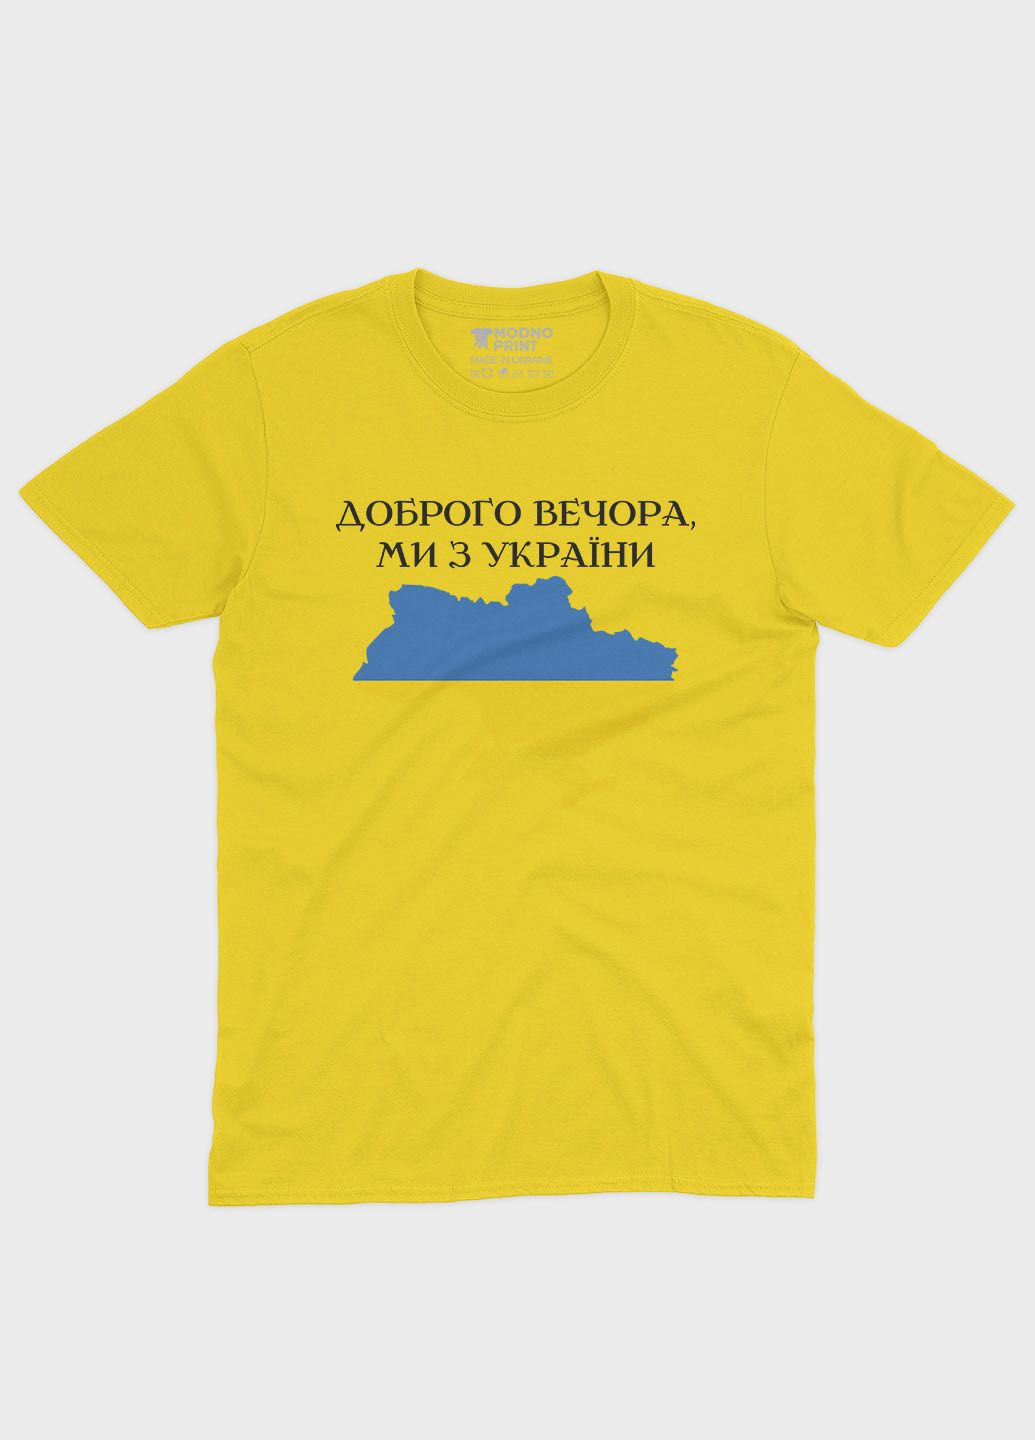 Желтая демисезонная футболка для девочки с патриотическим принтом добрый вечер (ts001-2-sun-005-1-048-g) Modno